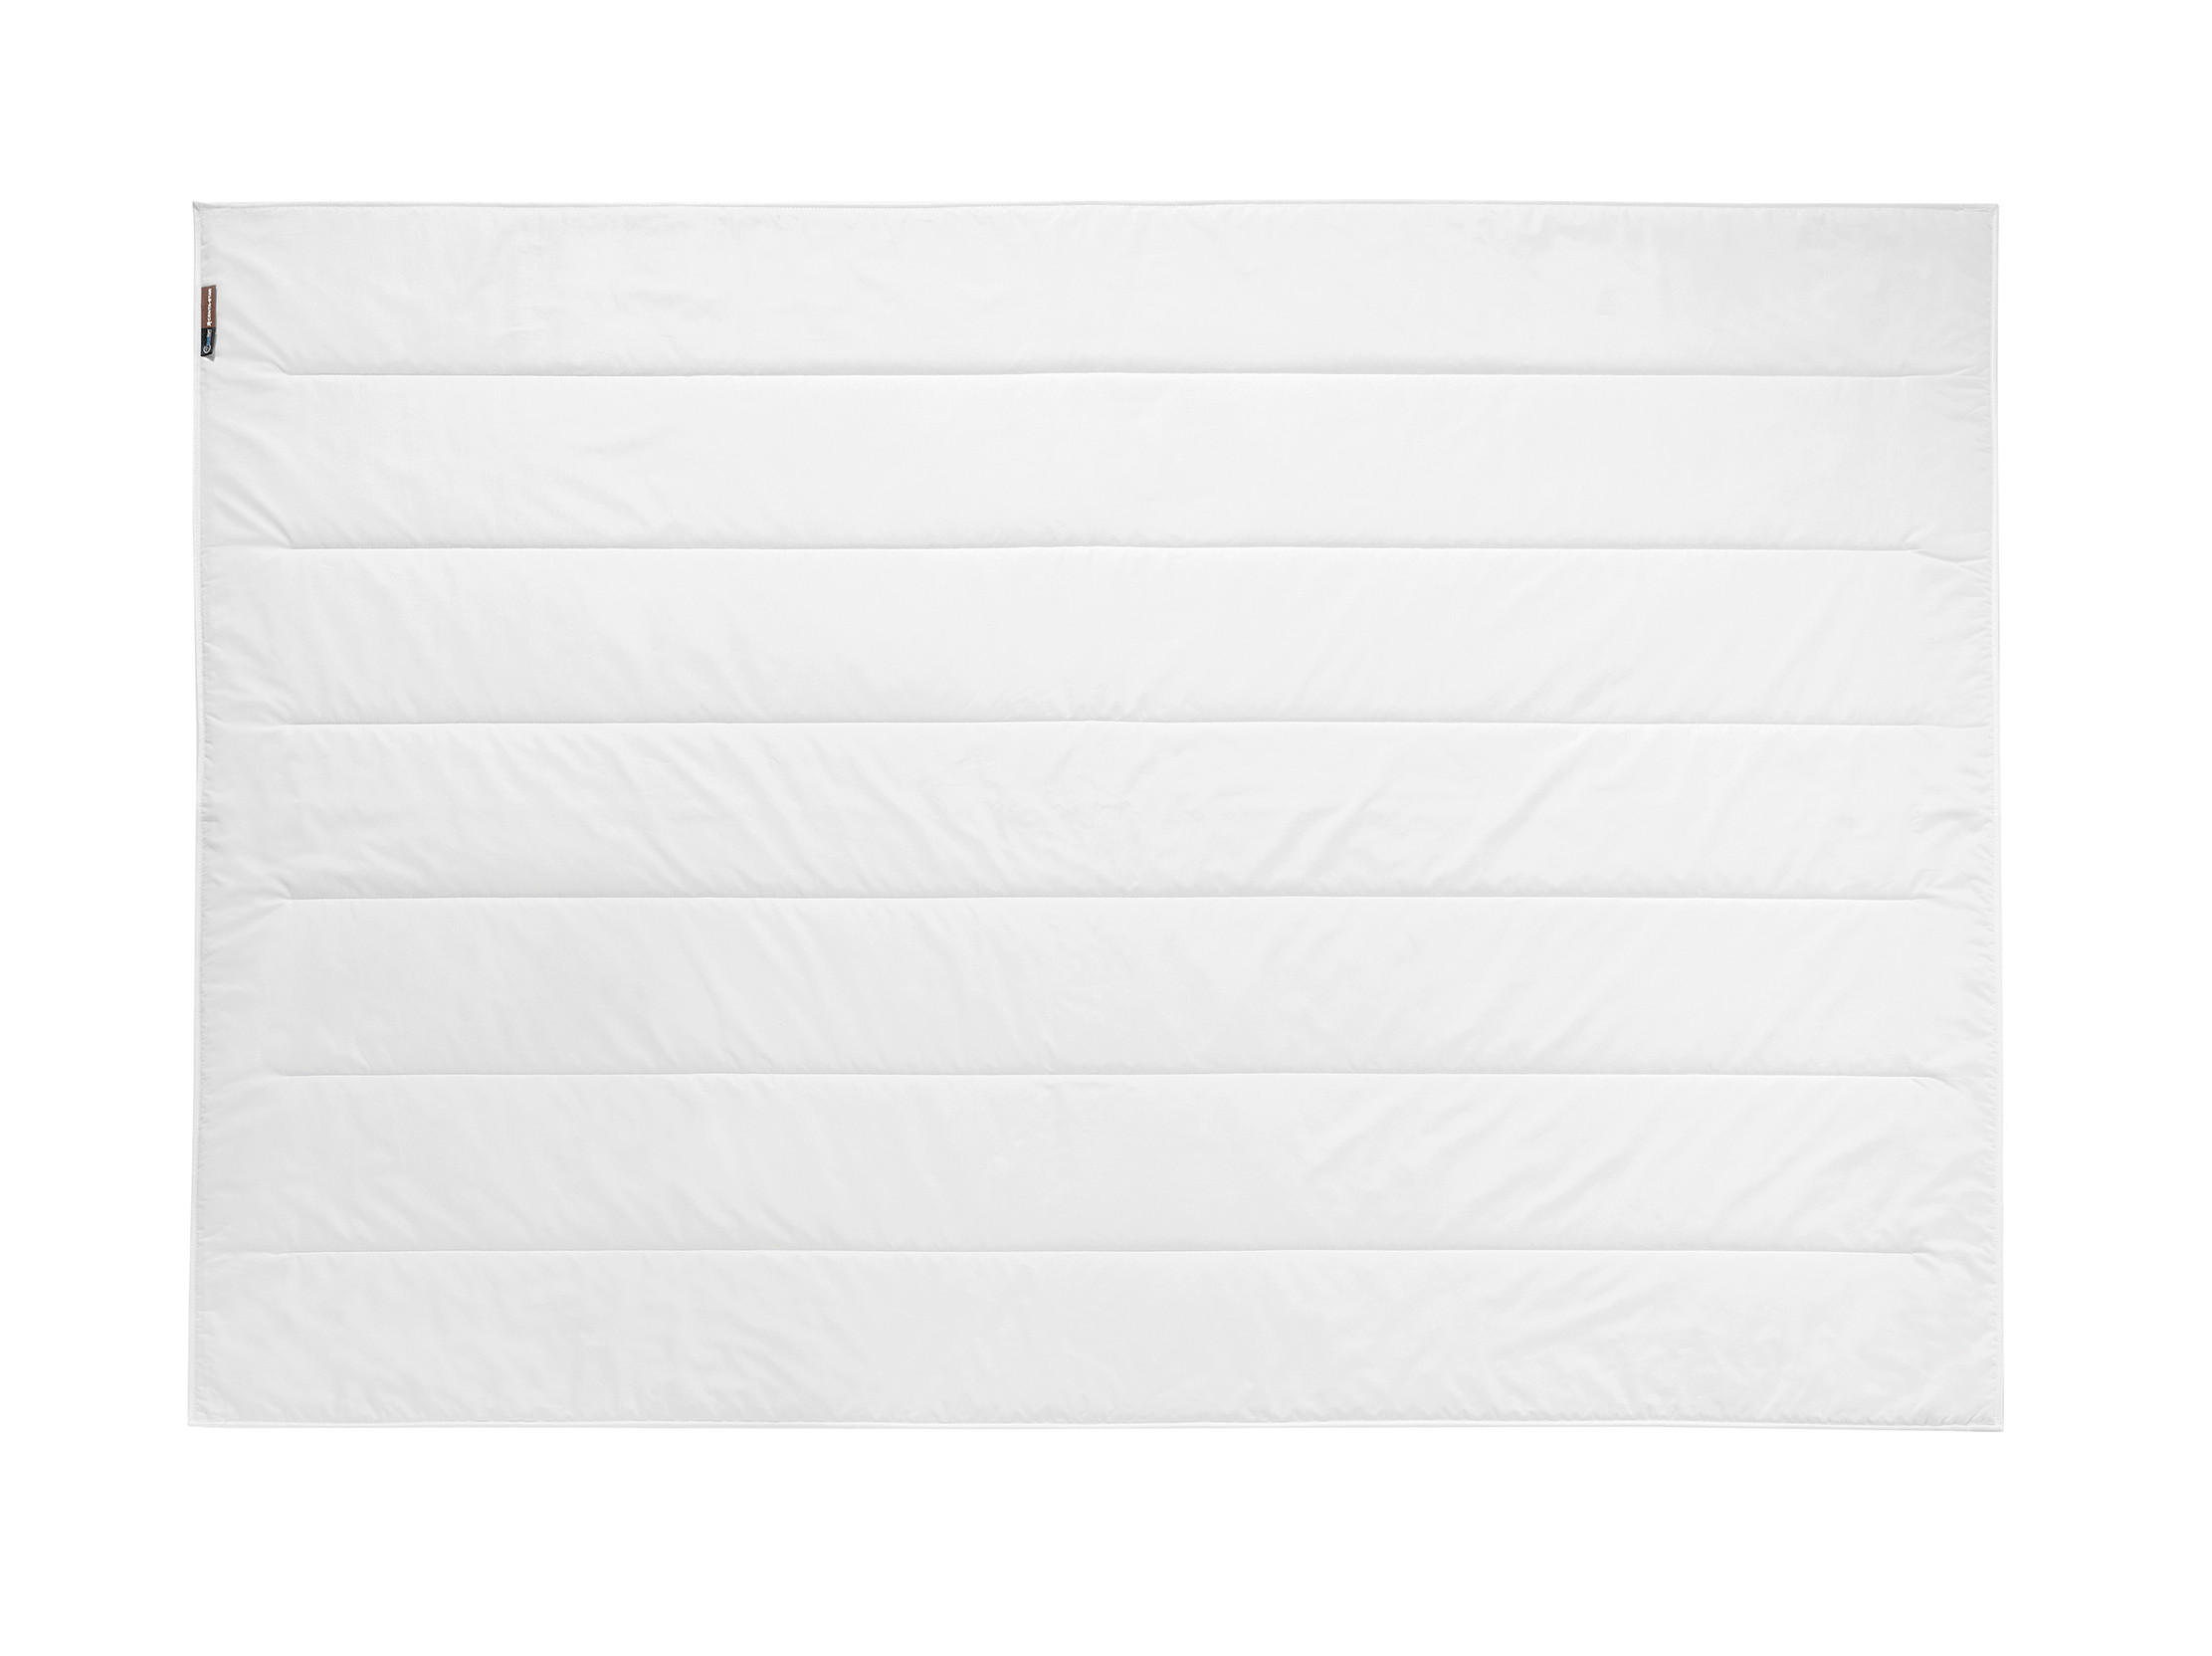 WINTERDECKE 135/200 cm Lavalan  - Weiß, KONVENTIONELL, Textil (135/200cm) - Centa-Star